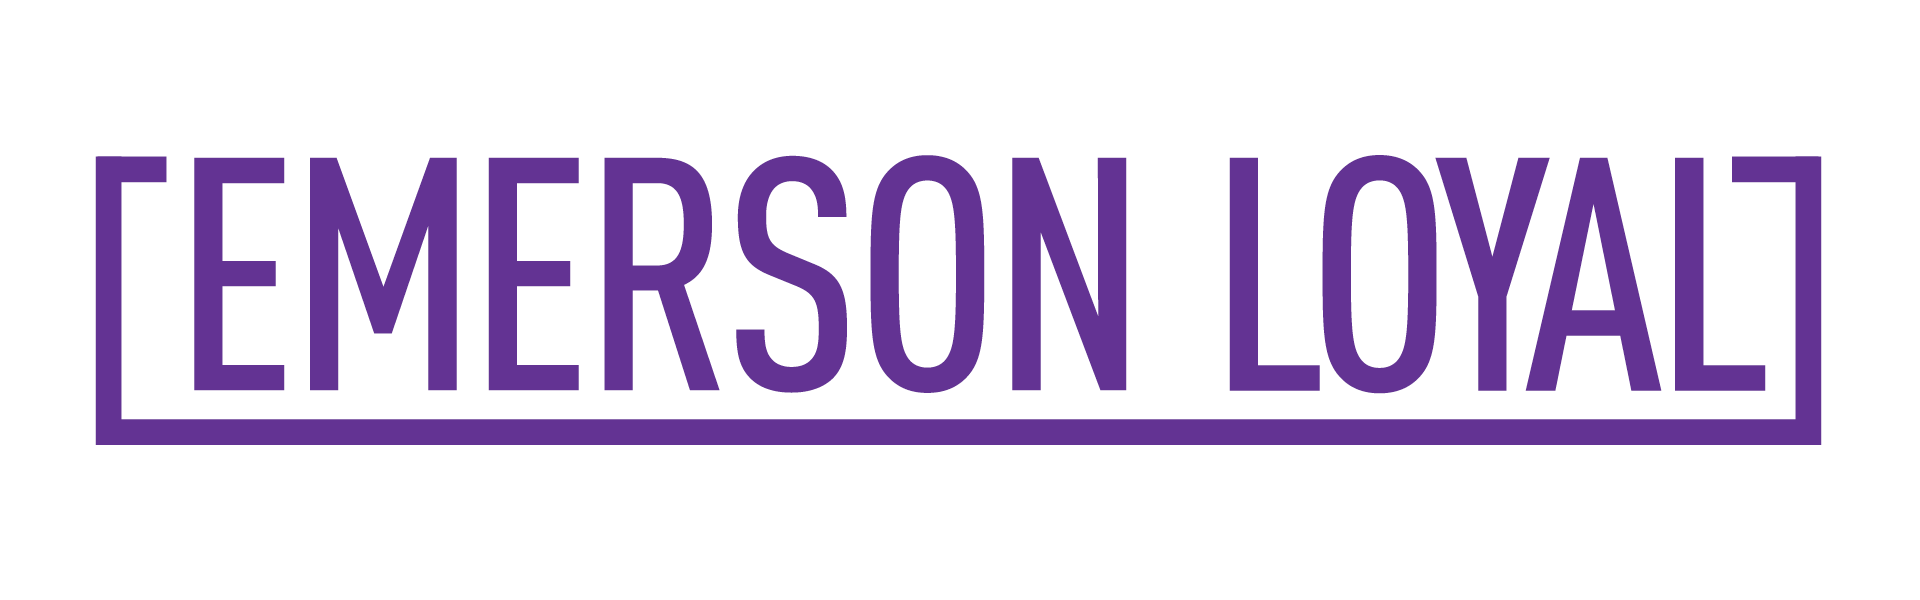 Emerson Loyal logo